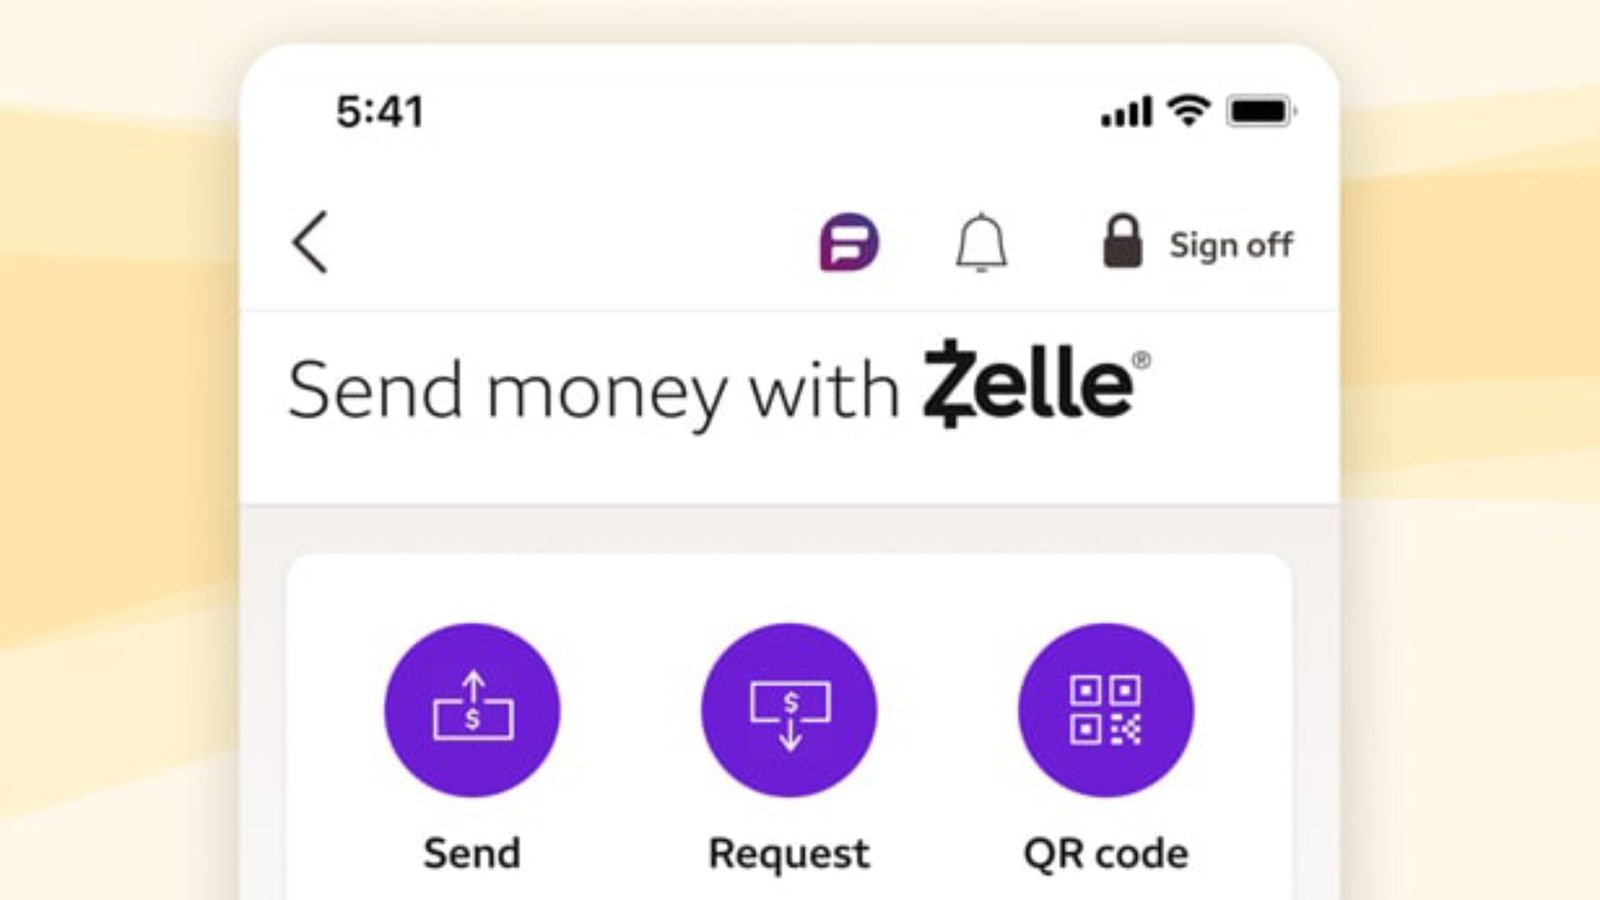 Wells Fargo Zelle not working - An image of the Zelle app on iPhone